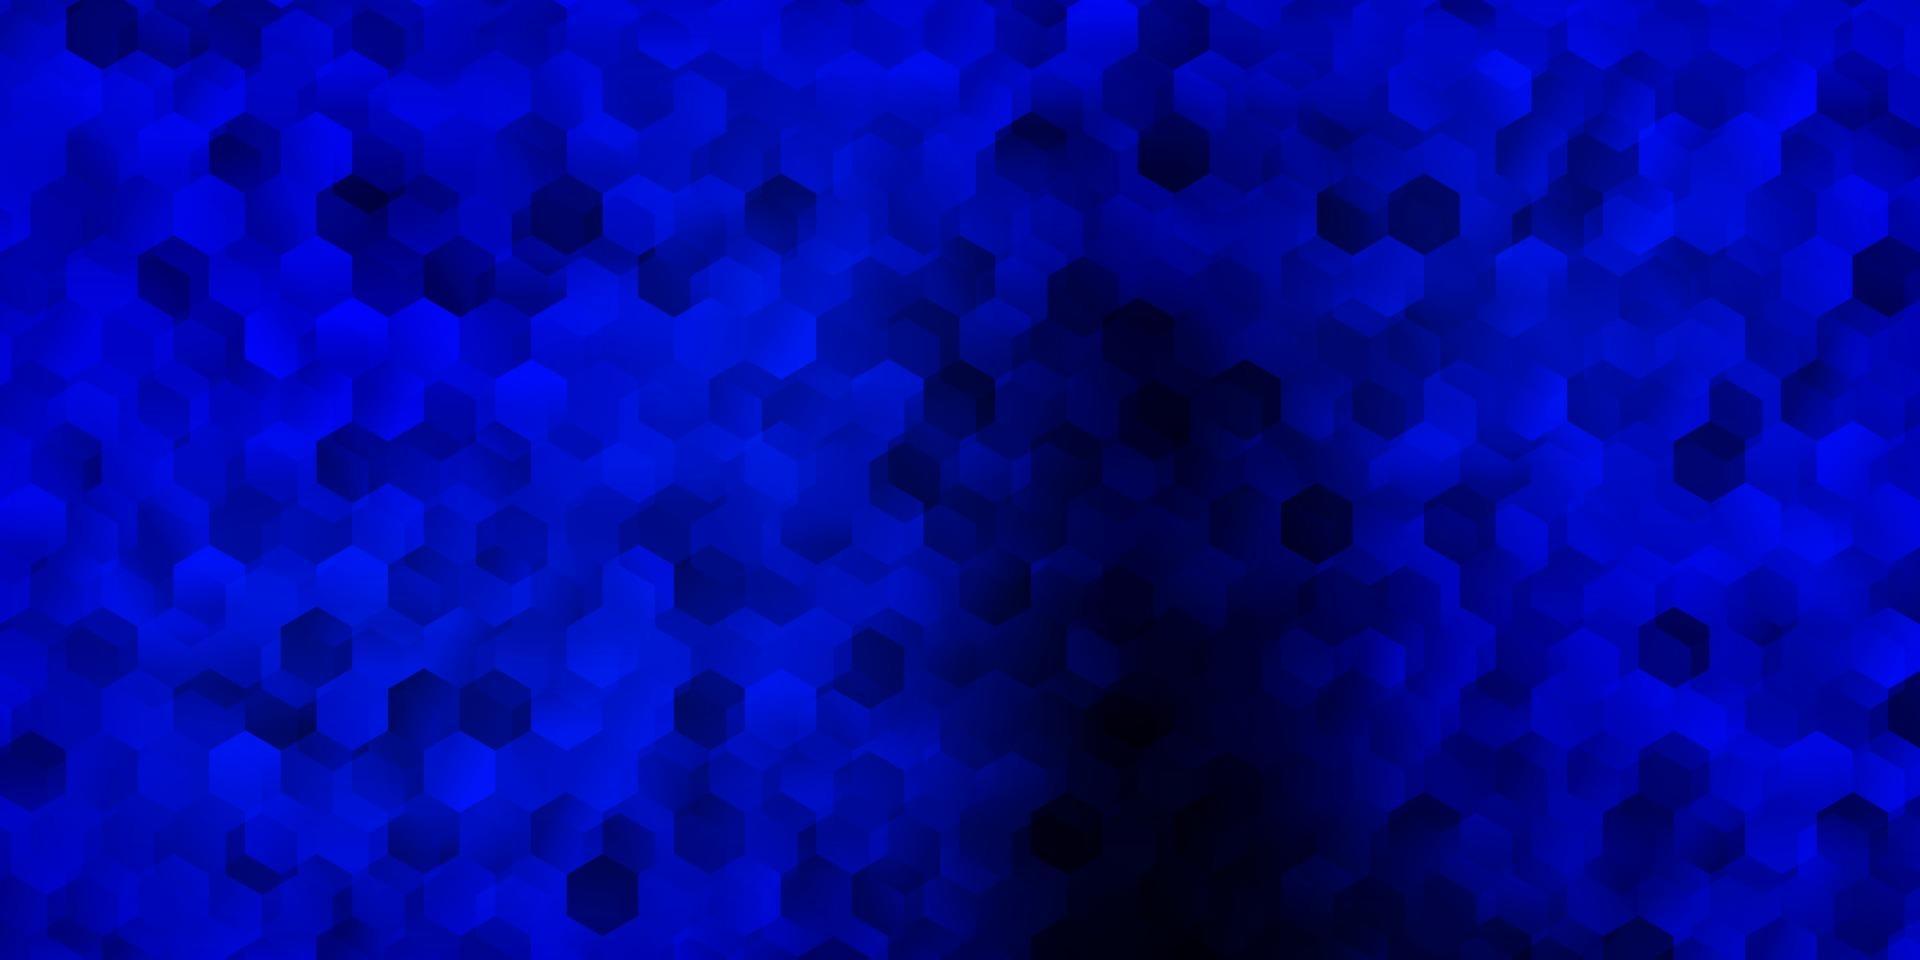 patrón de vector azul oscuro con hexágonos.